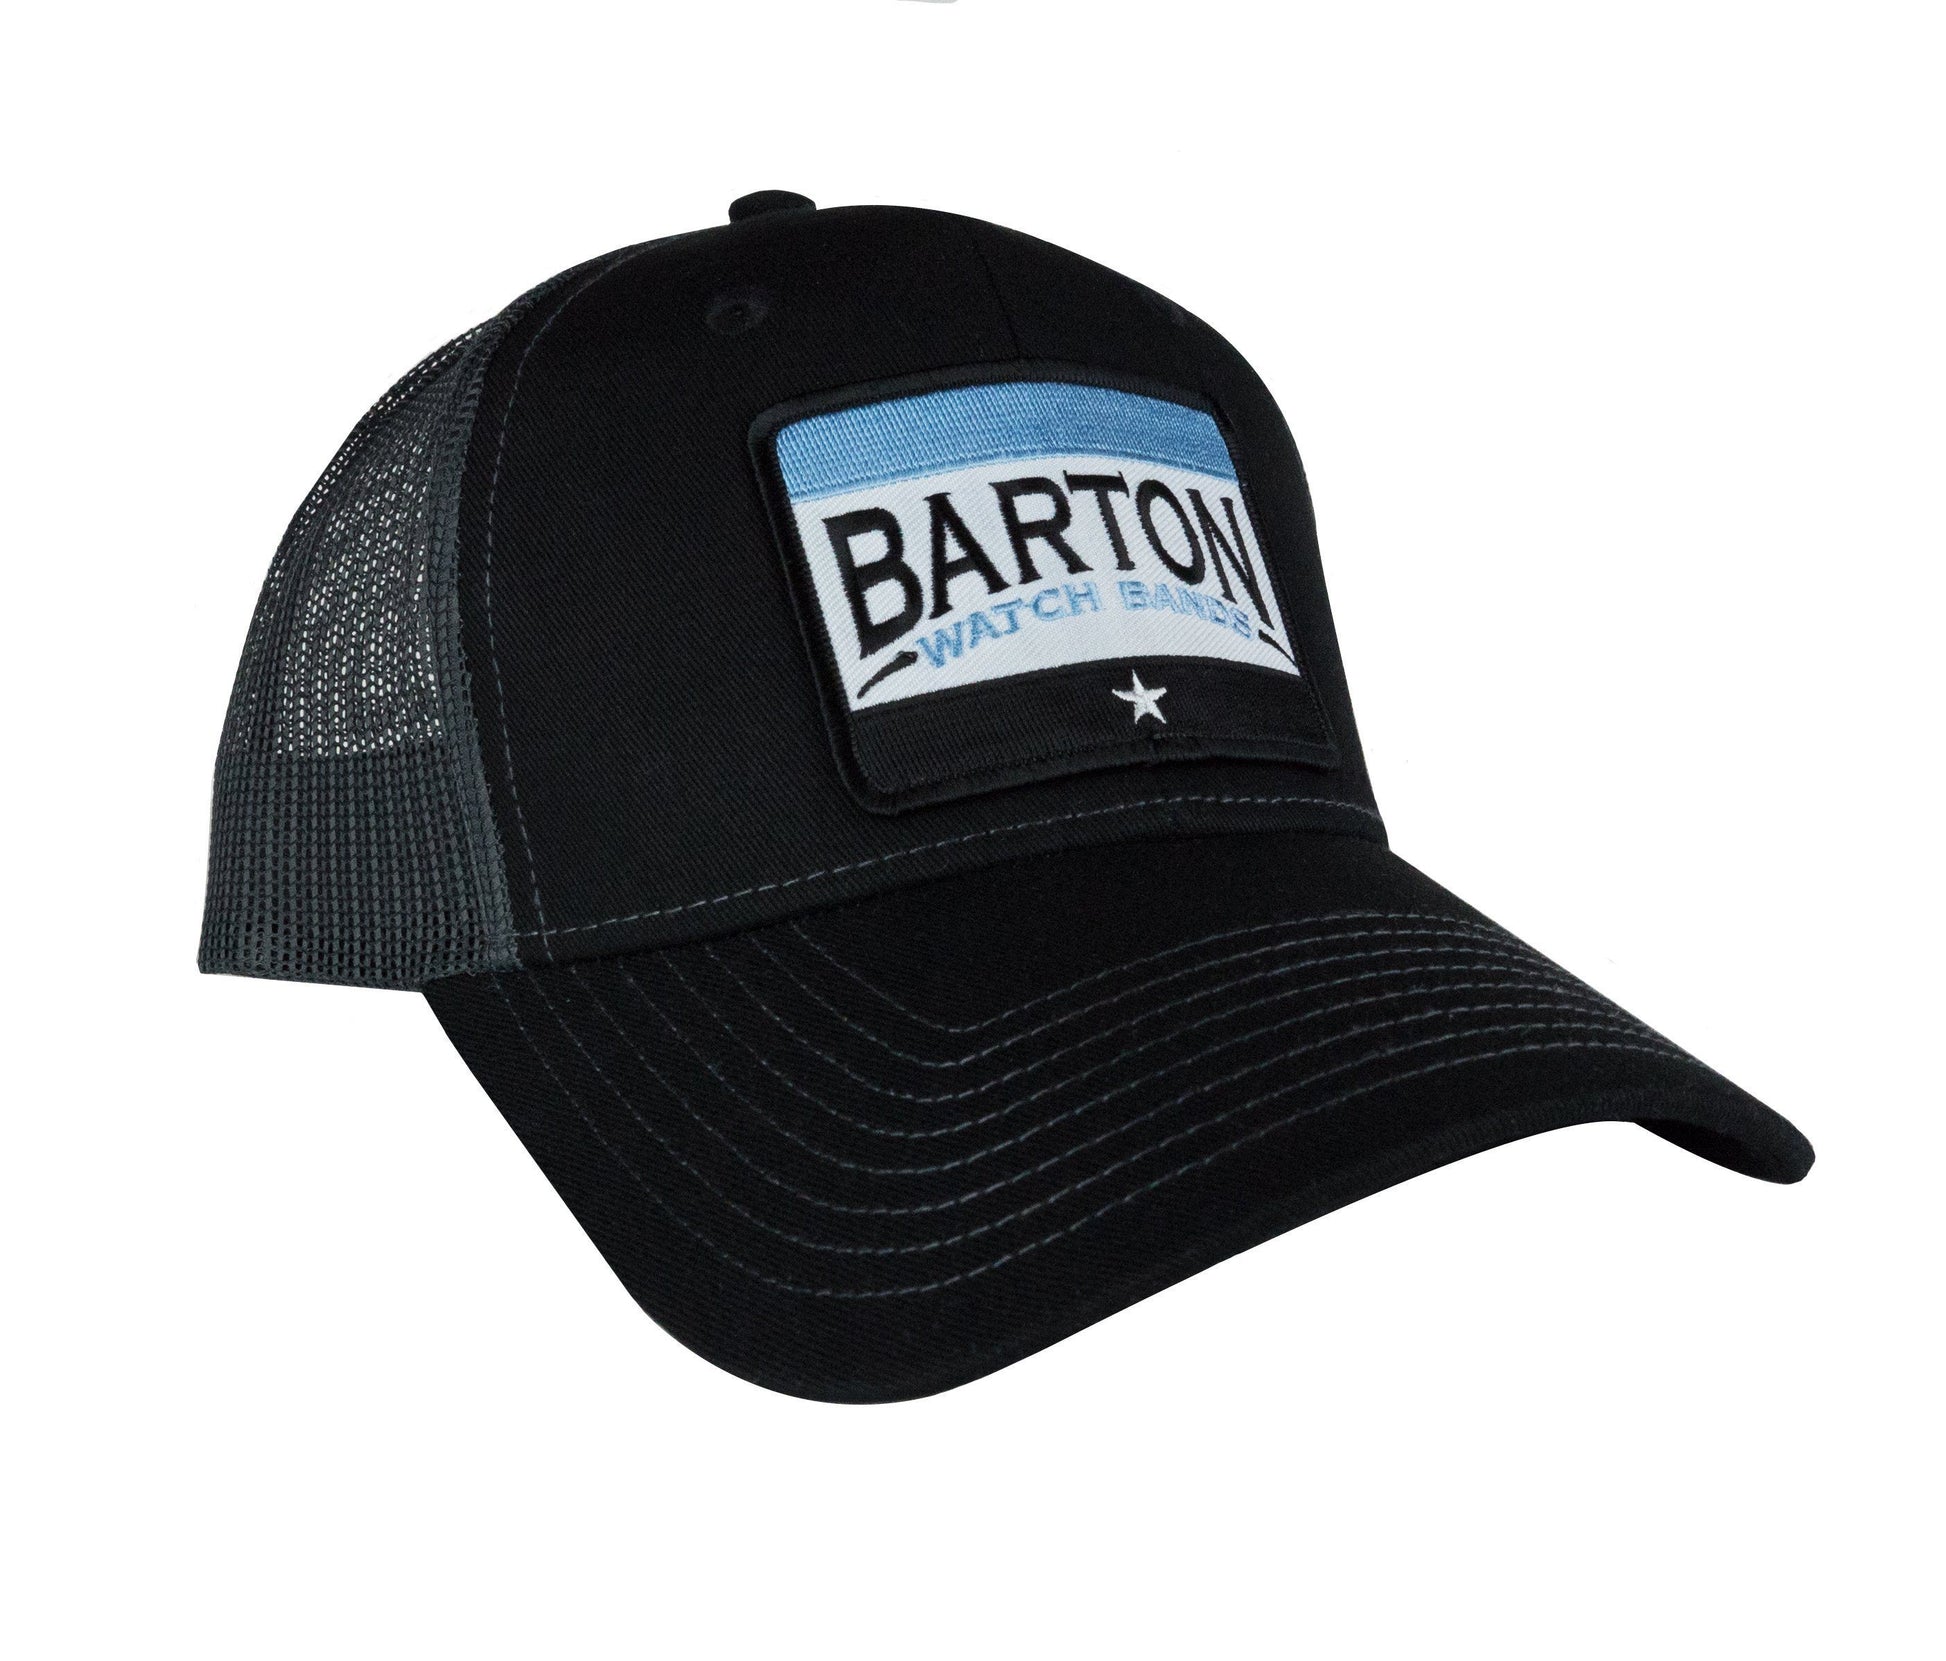 BARTON Mesh Back Trucker Hat - Barton Watch Bands